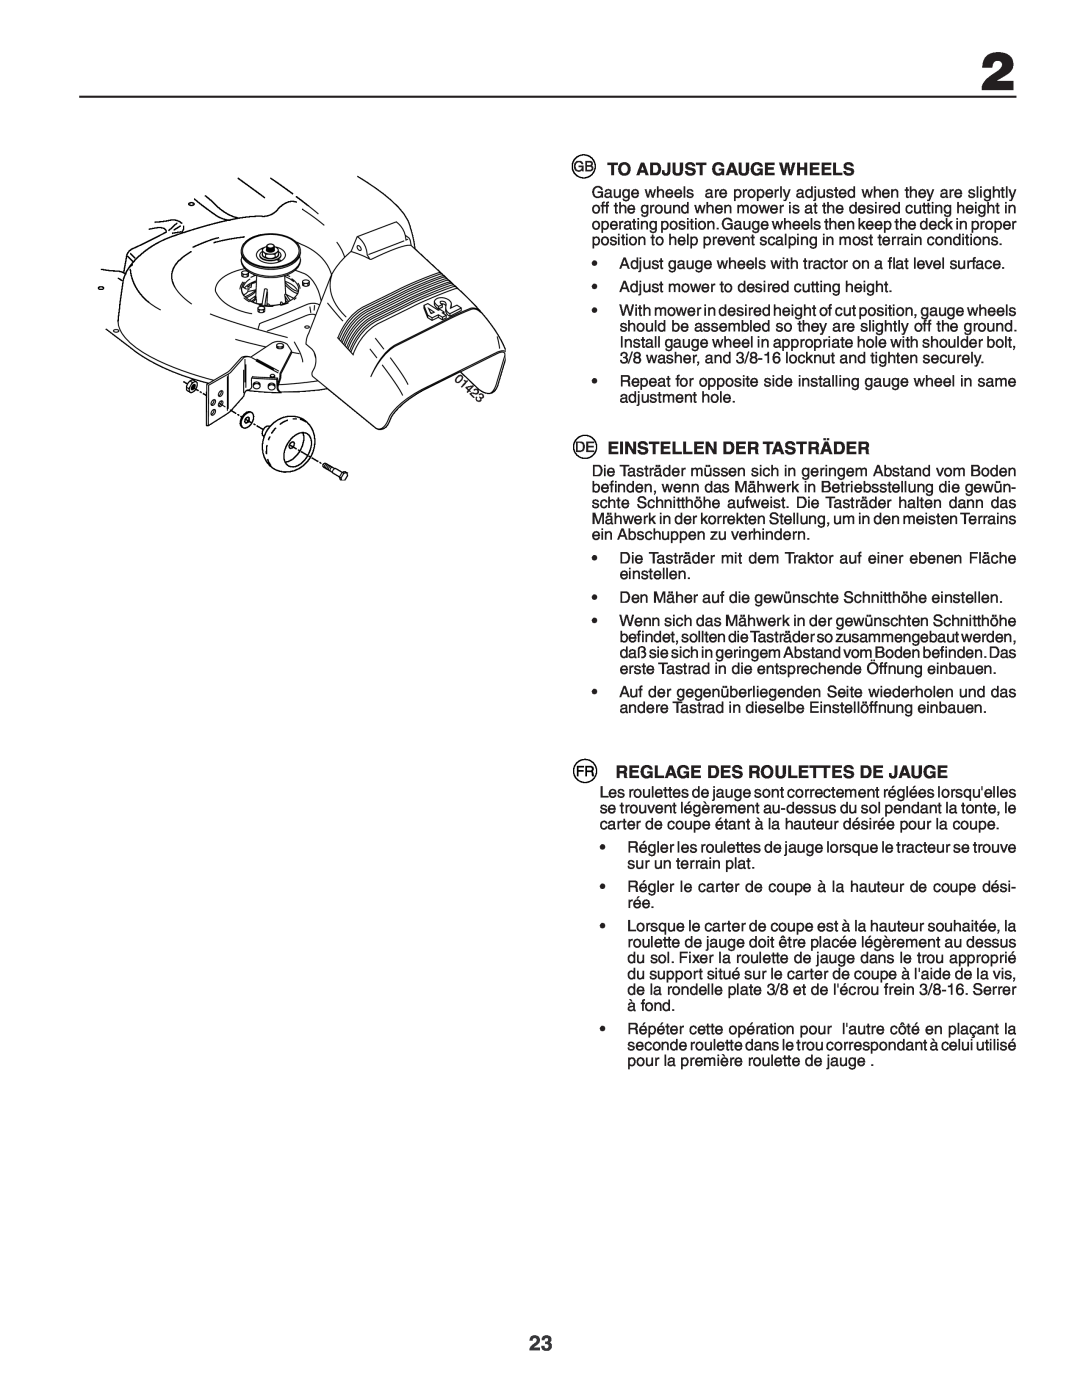 Husqvarna YTH180XP instruction manual To Adjust Gauge Wheels, Einstellen Der Tasträder, Reglage Des Roulettes De Jauge 